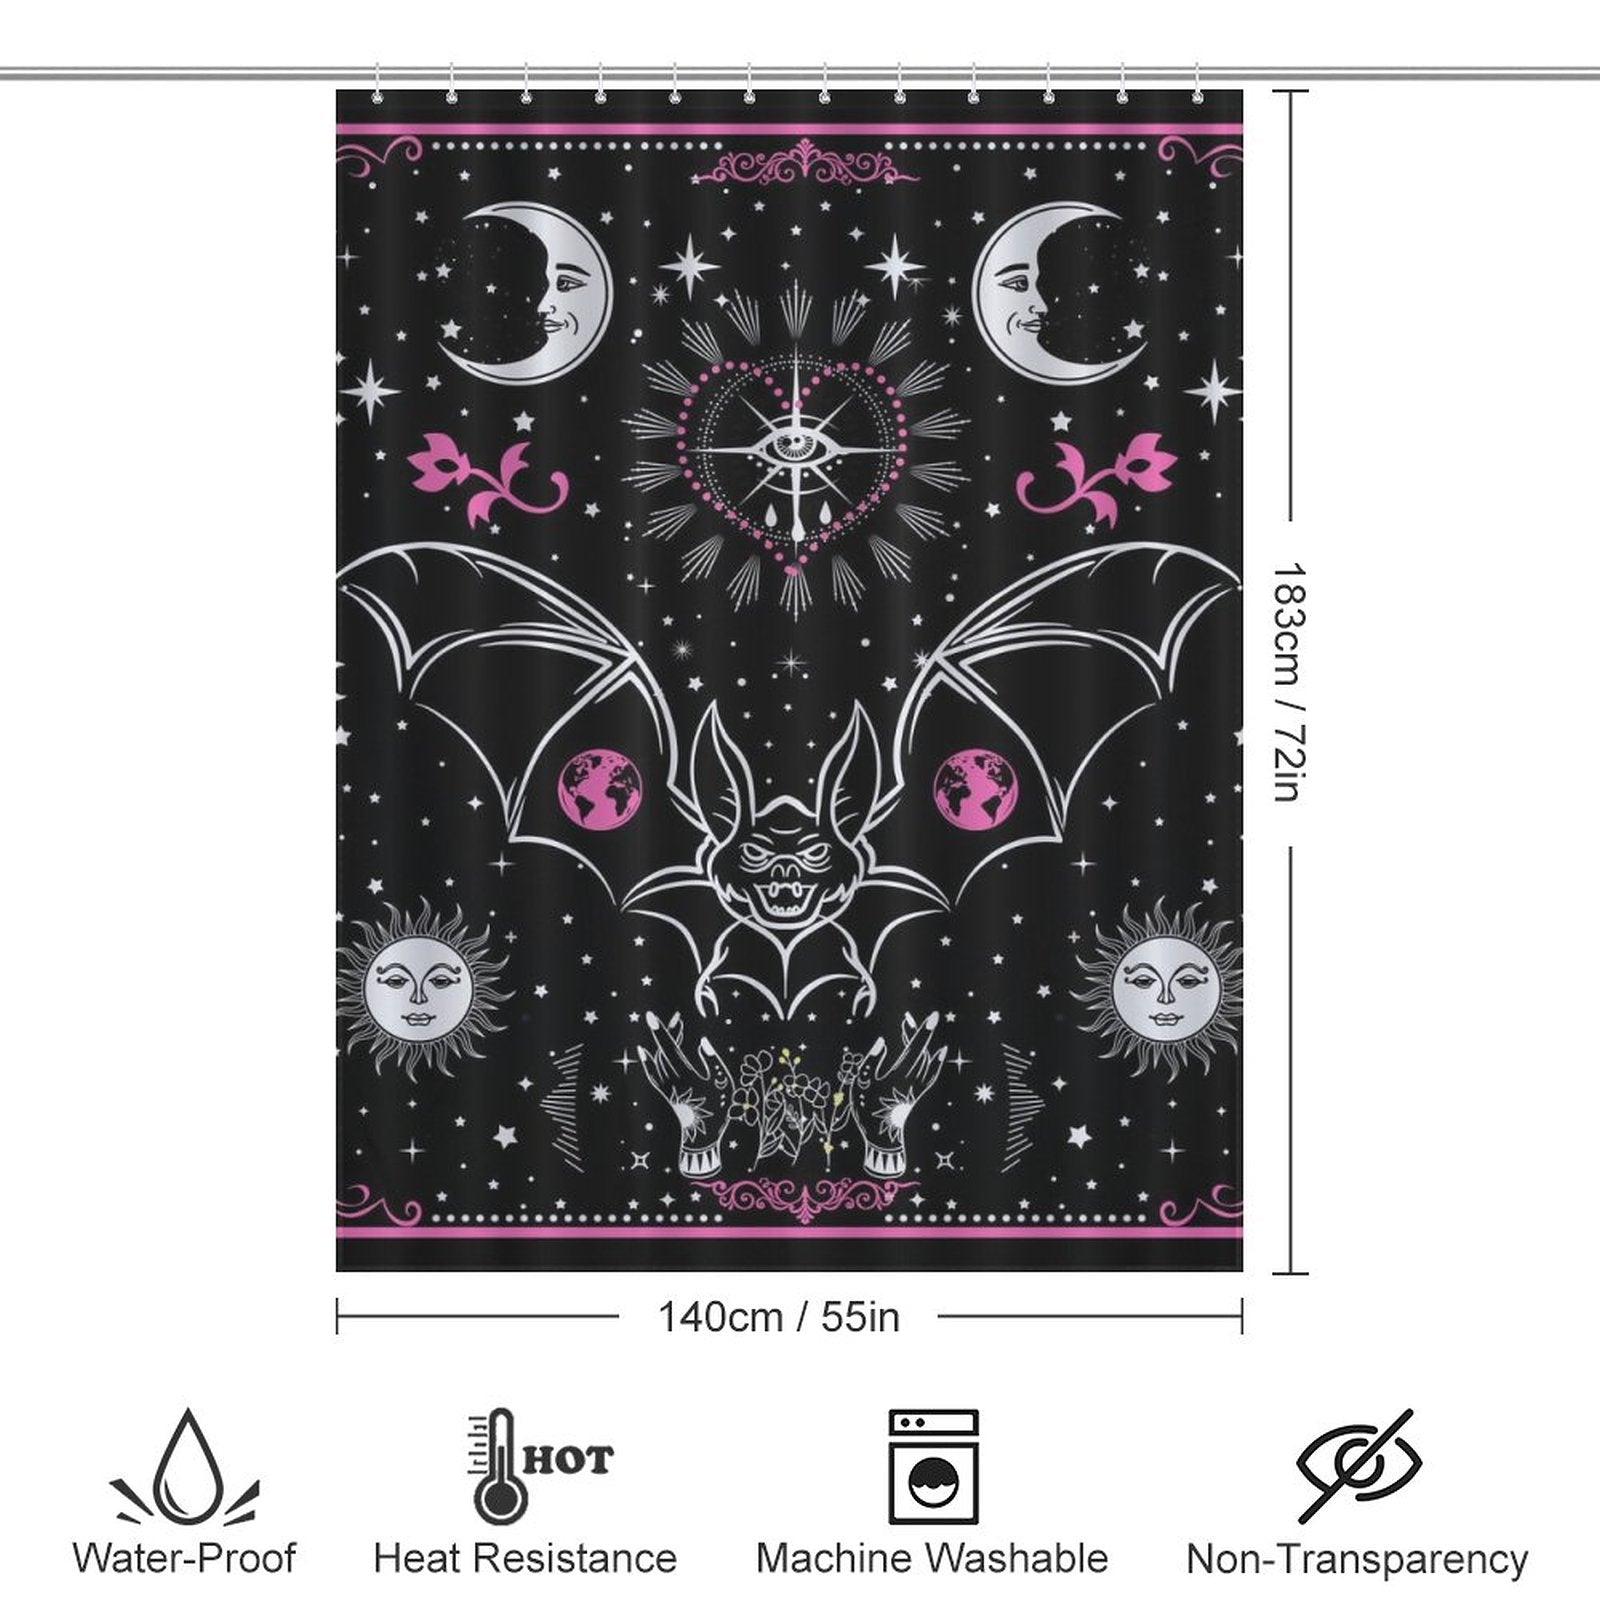 A black and pink Tarot Bat Shower Curtain-Cottoncat with bats, moons, and a tarot card design.